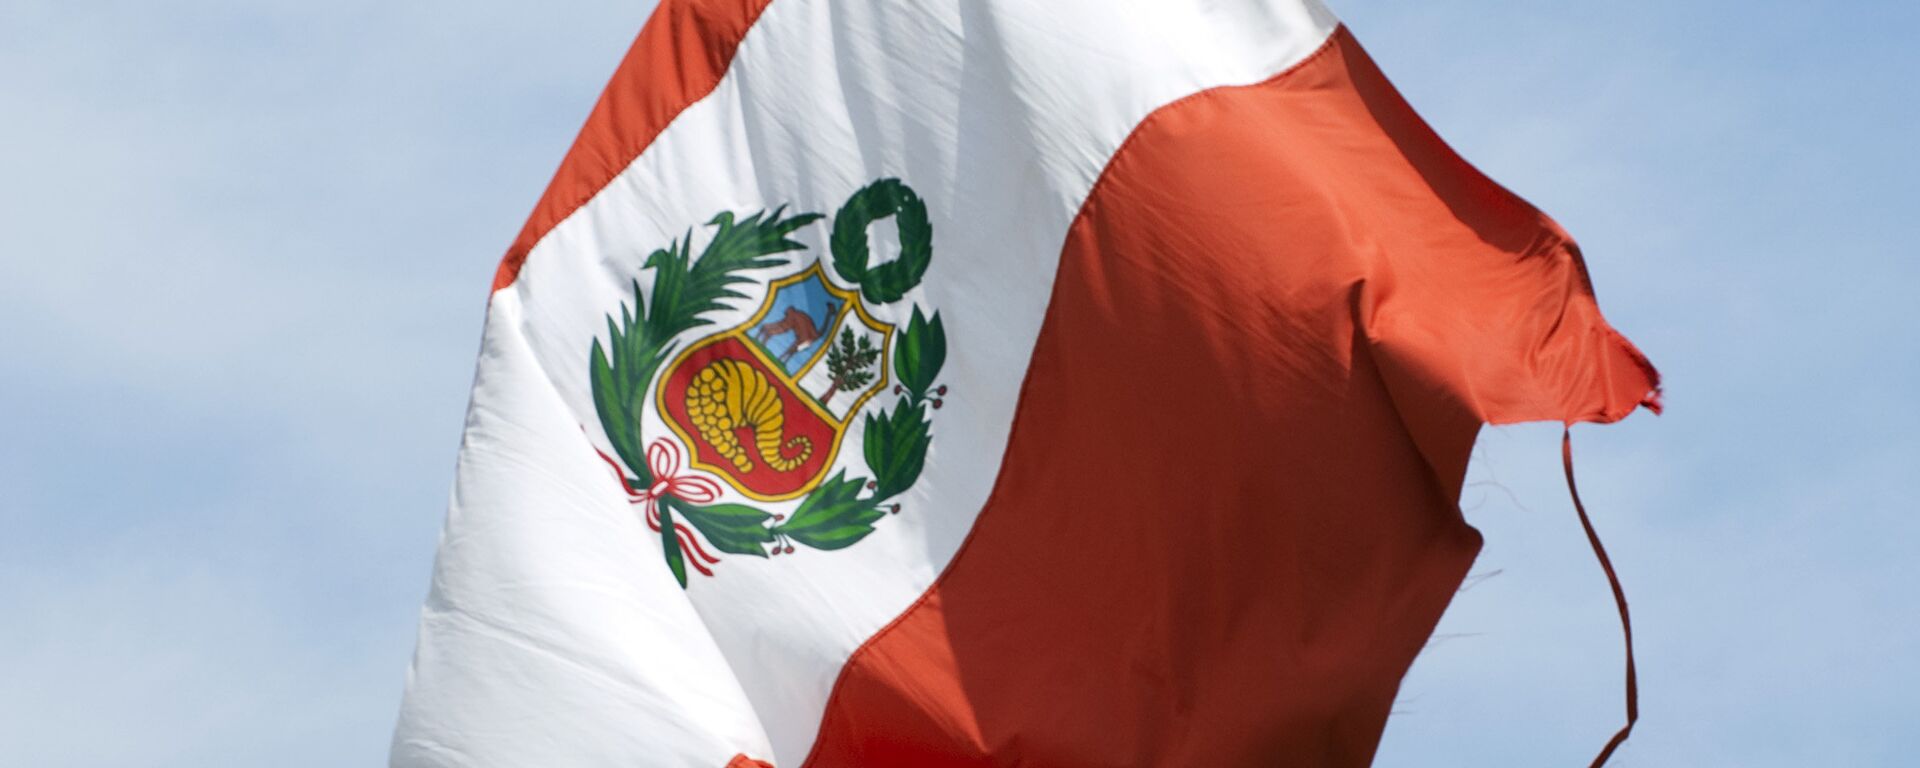 La bandera de Perú - Sputnik Mundo, 1920, 23.04.2021